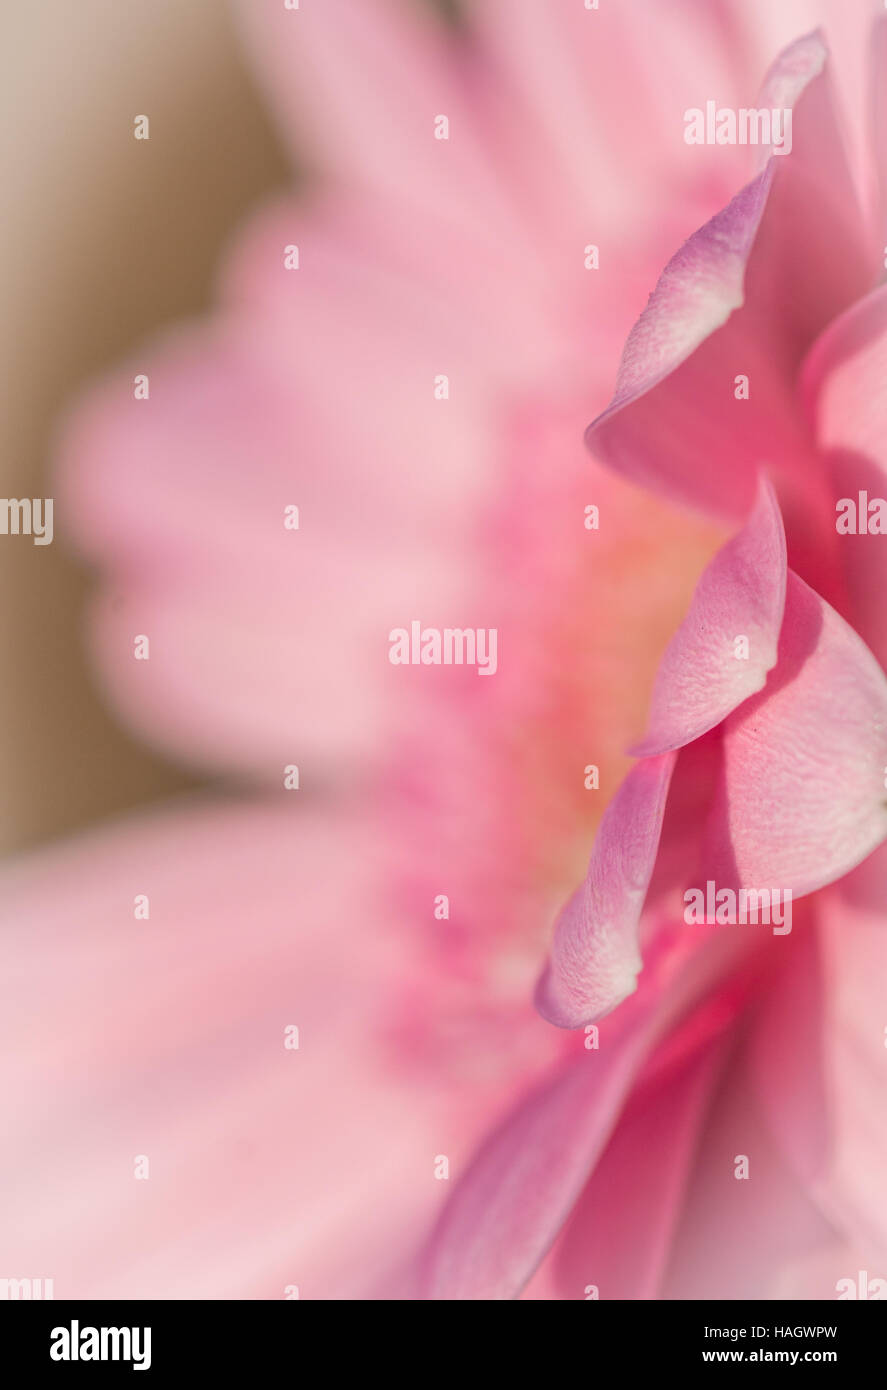 Edge of a daisy petal abstract Stock Photo